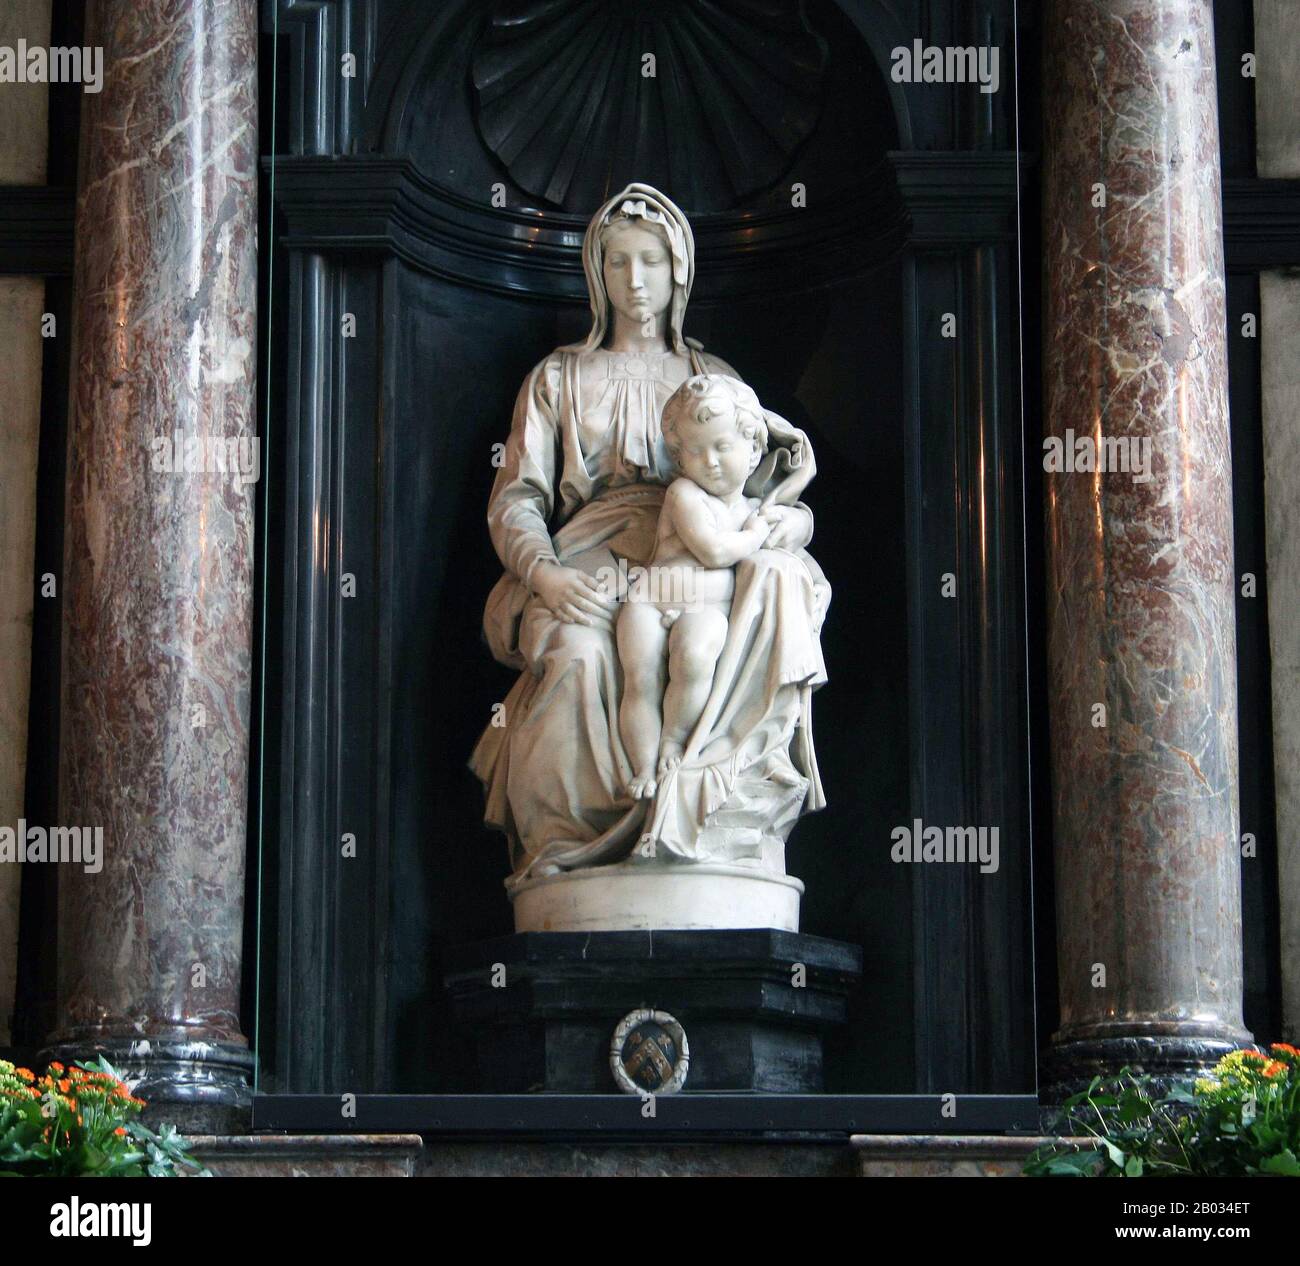 Die Madonna von Brüggen ist eine Marmorskulptur von Michelangelo von Maria mit dem Jesuskind. Als Meisterwerk angesehen, wurde es im Rahmen ihres "Nazi-Plunder"-Programms im Jahr 1944 von deutschen Streitkräften gestohlen. Sie wurde ein Jahr später von alliierten Truppen im Salzbergwerk Altaussee in ZentralÖsterreich geborgen und sicher nach Brüggen zurückgebracht, wo sie heute verbleibt. Stockfoto